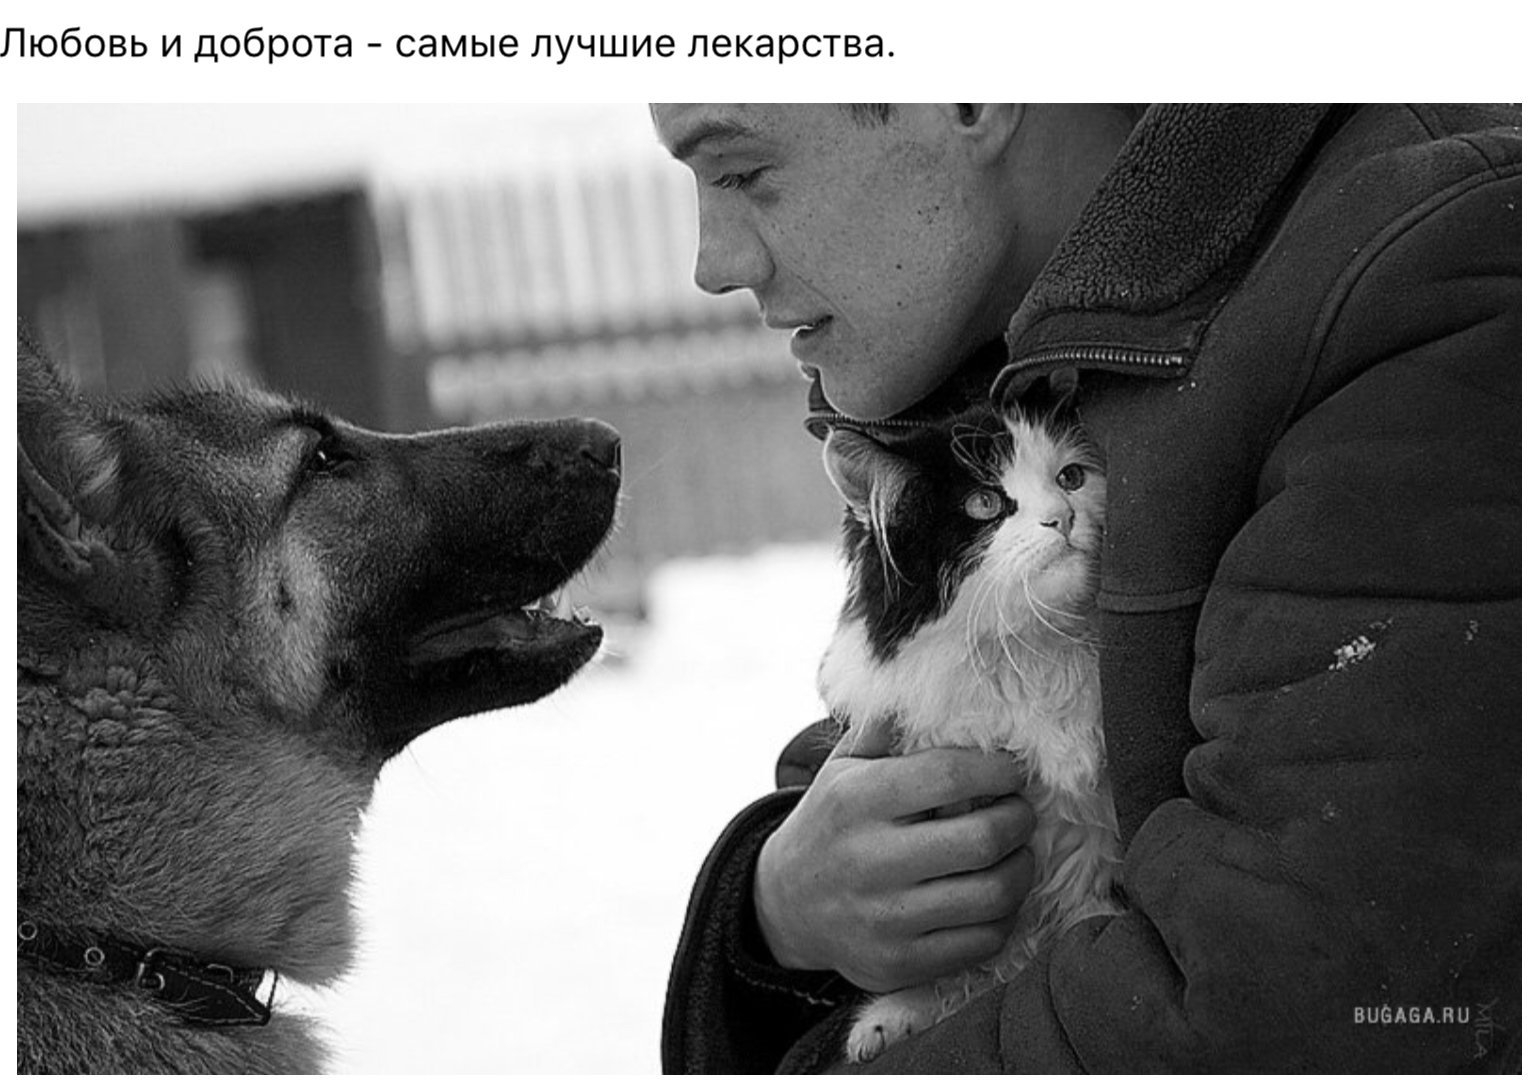 Беларусь в лицах преданные делу и стране. Человечность к животным. Любовь человека к животным. Добро к животным. Доброта к людям.